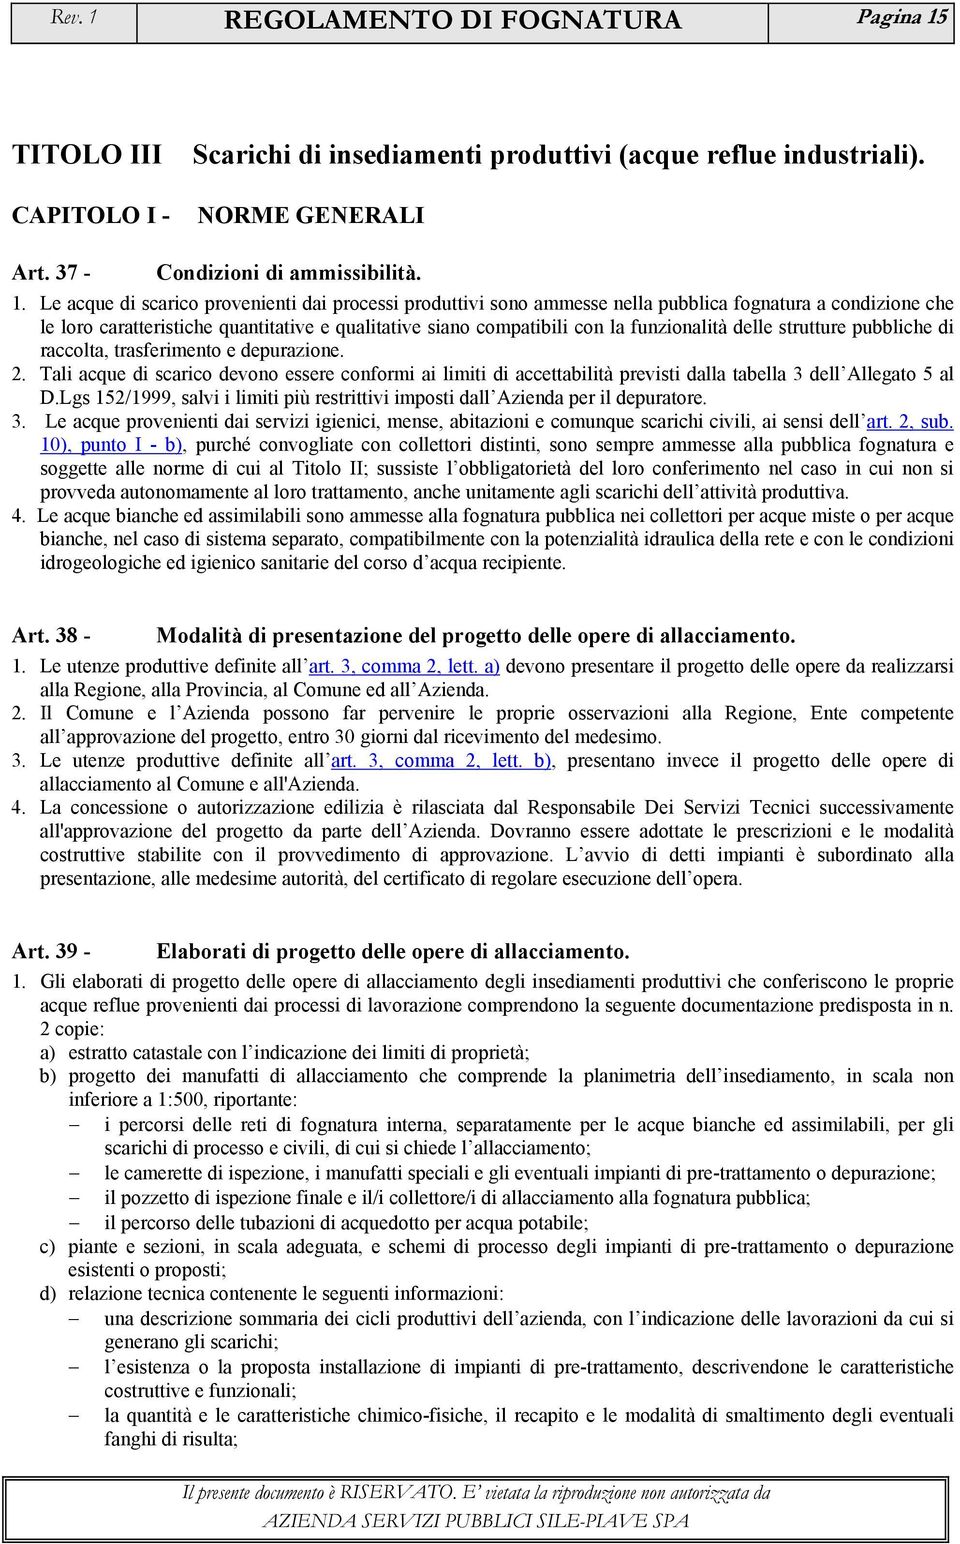 TITOLO III CAPITOLO I - Scarichi di insediamenti produttivi (acque reflue industriali). NORME GENERALI Art. 37 - Condizioni di ammissibilità. 1.